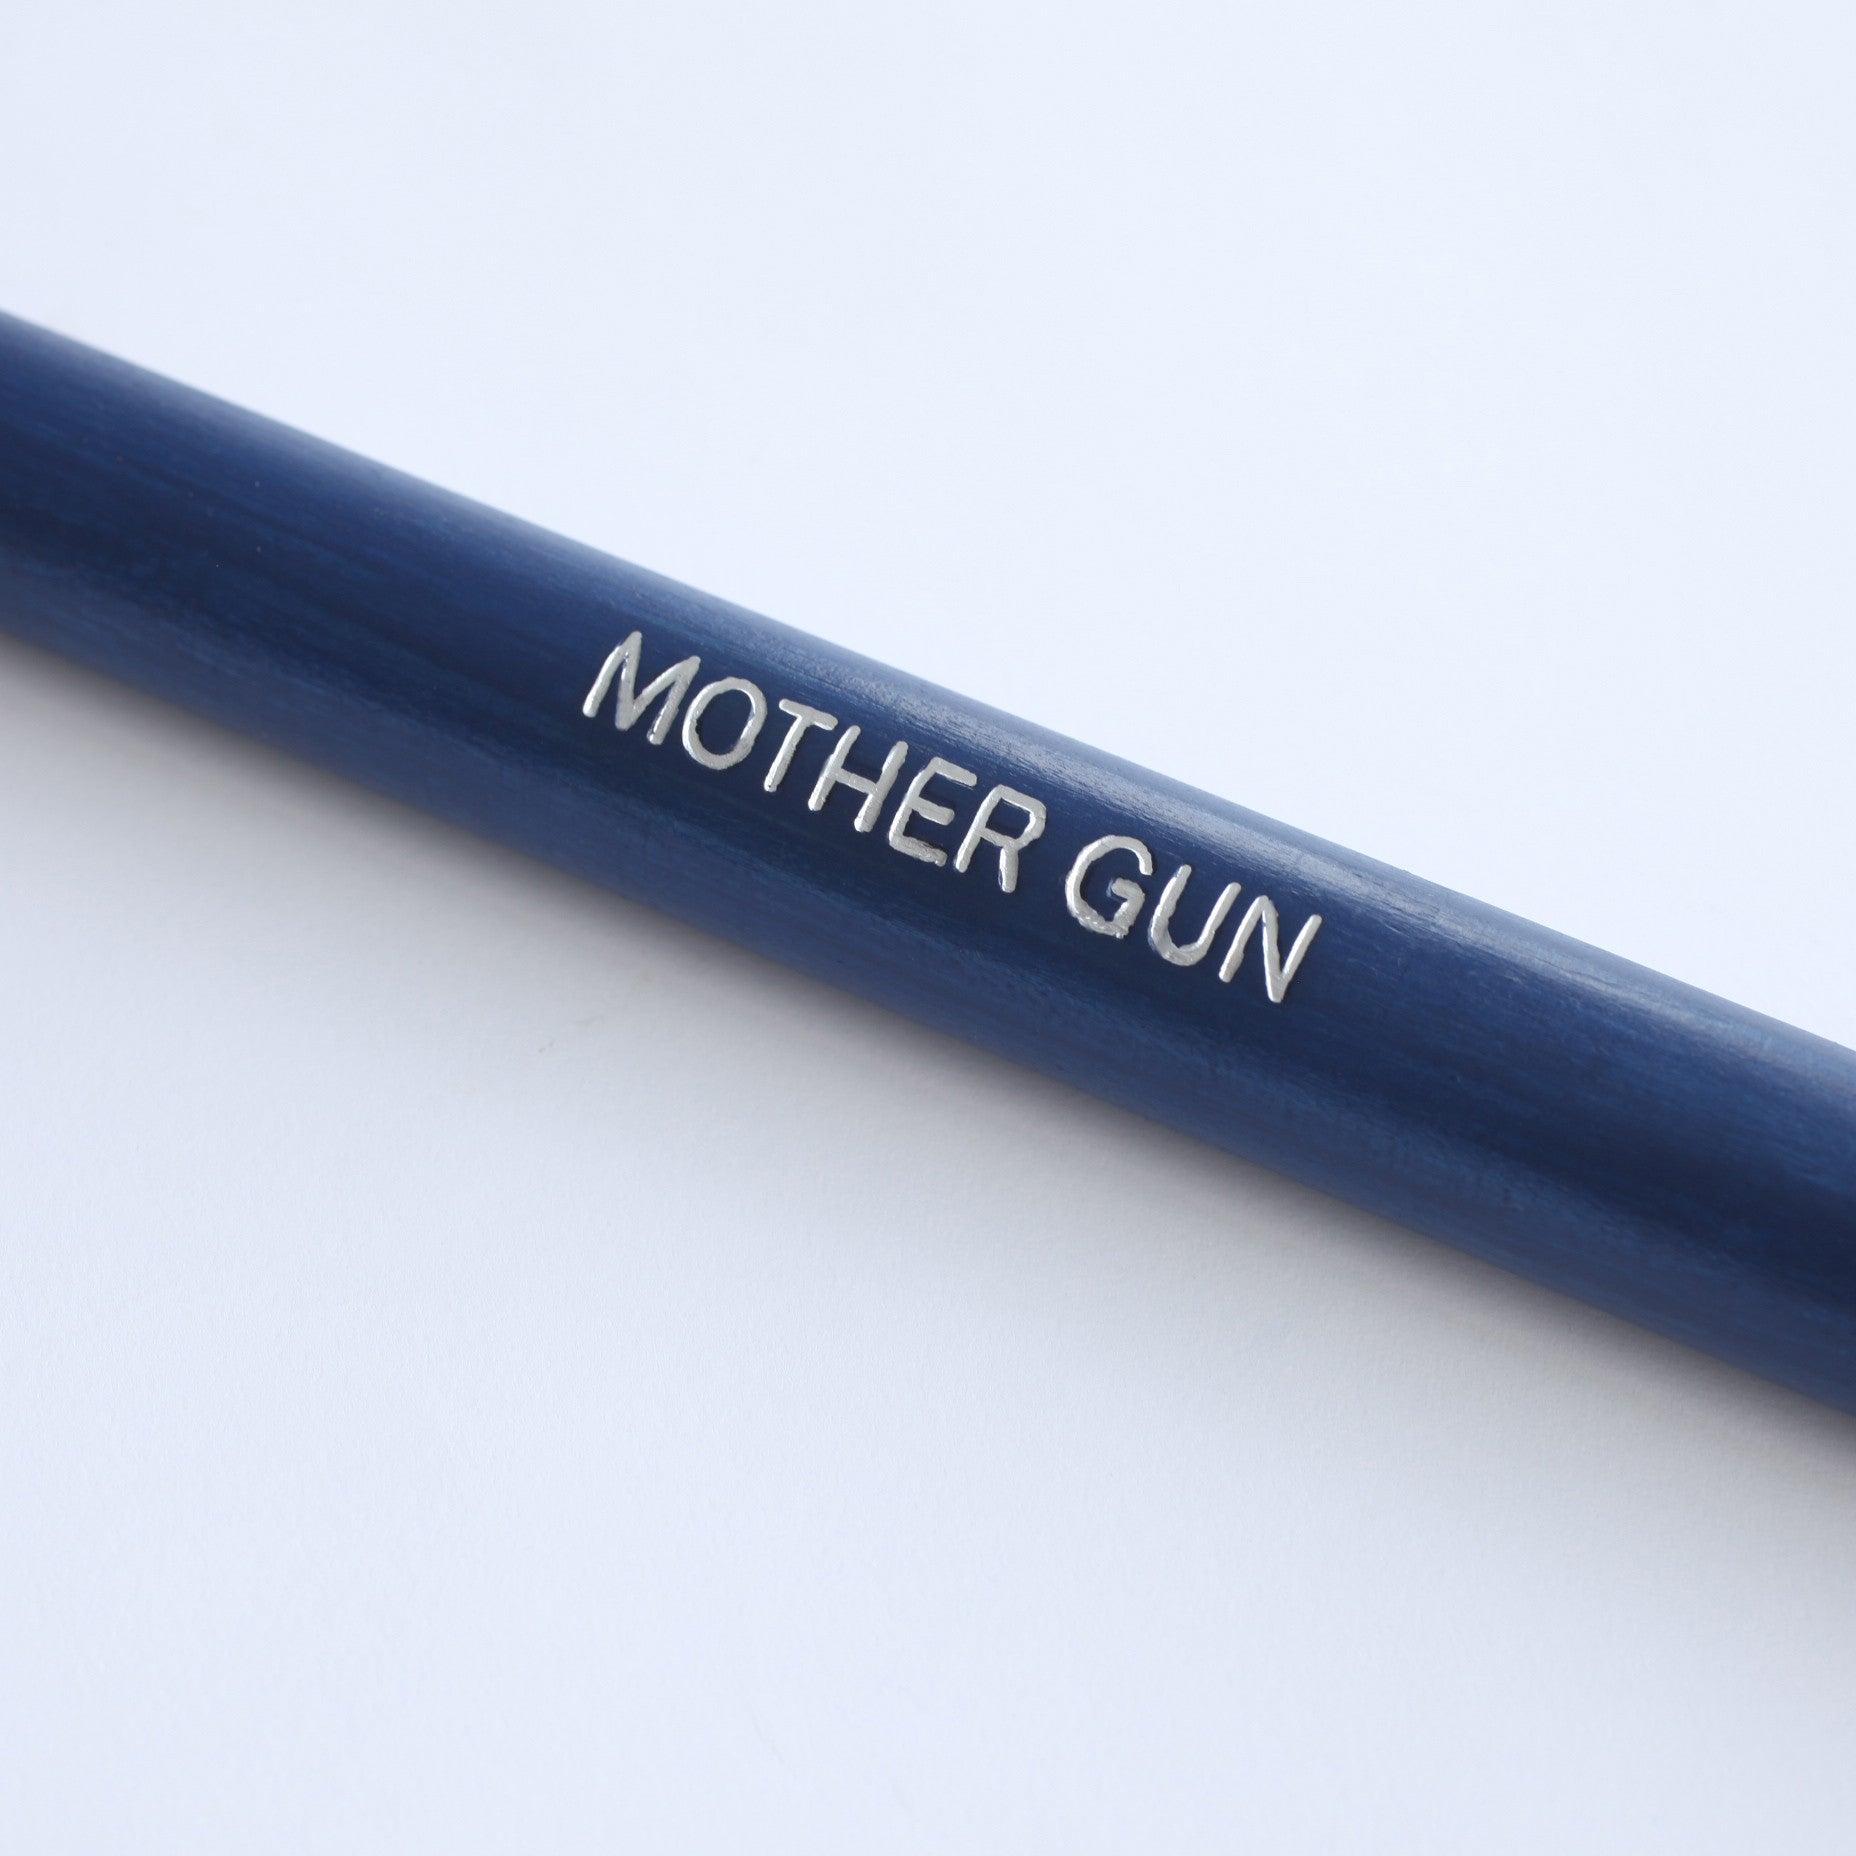 Mother Gun